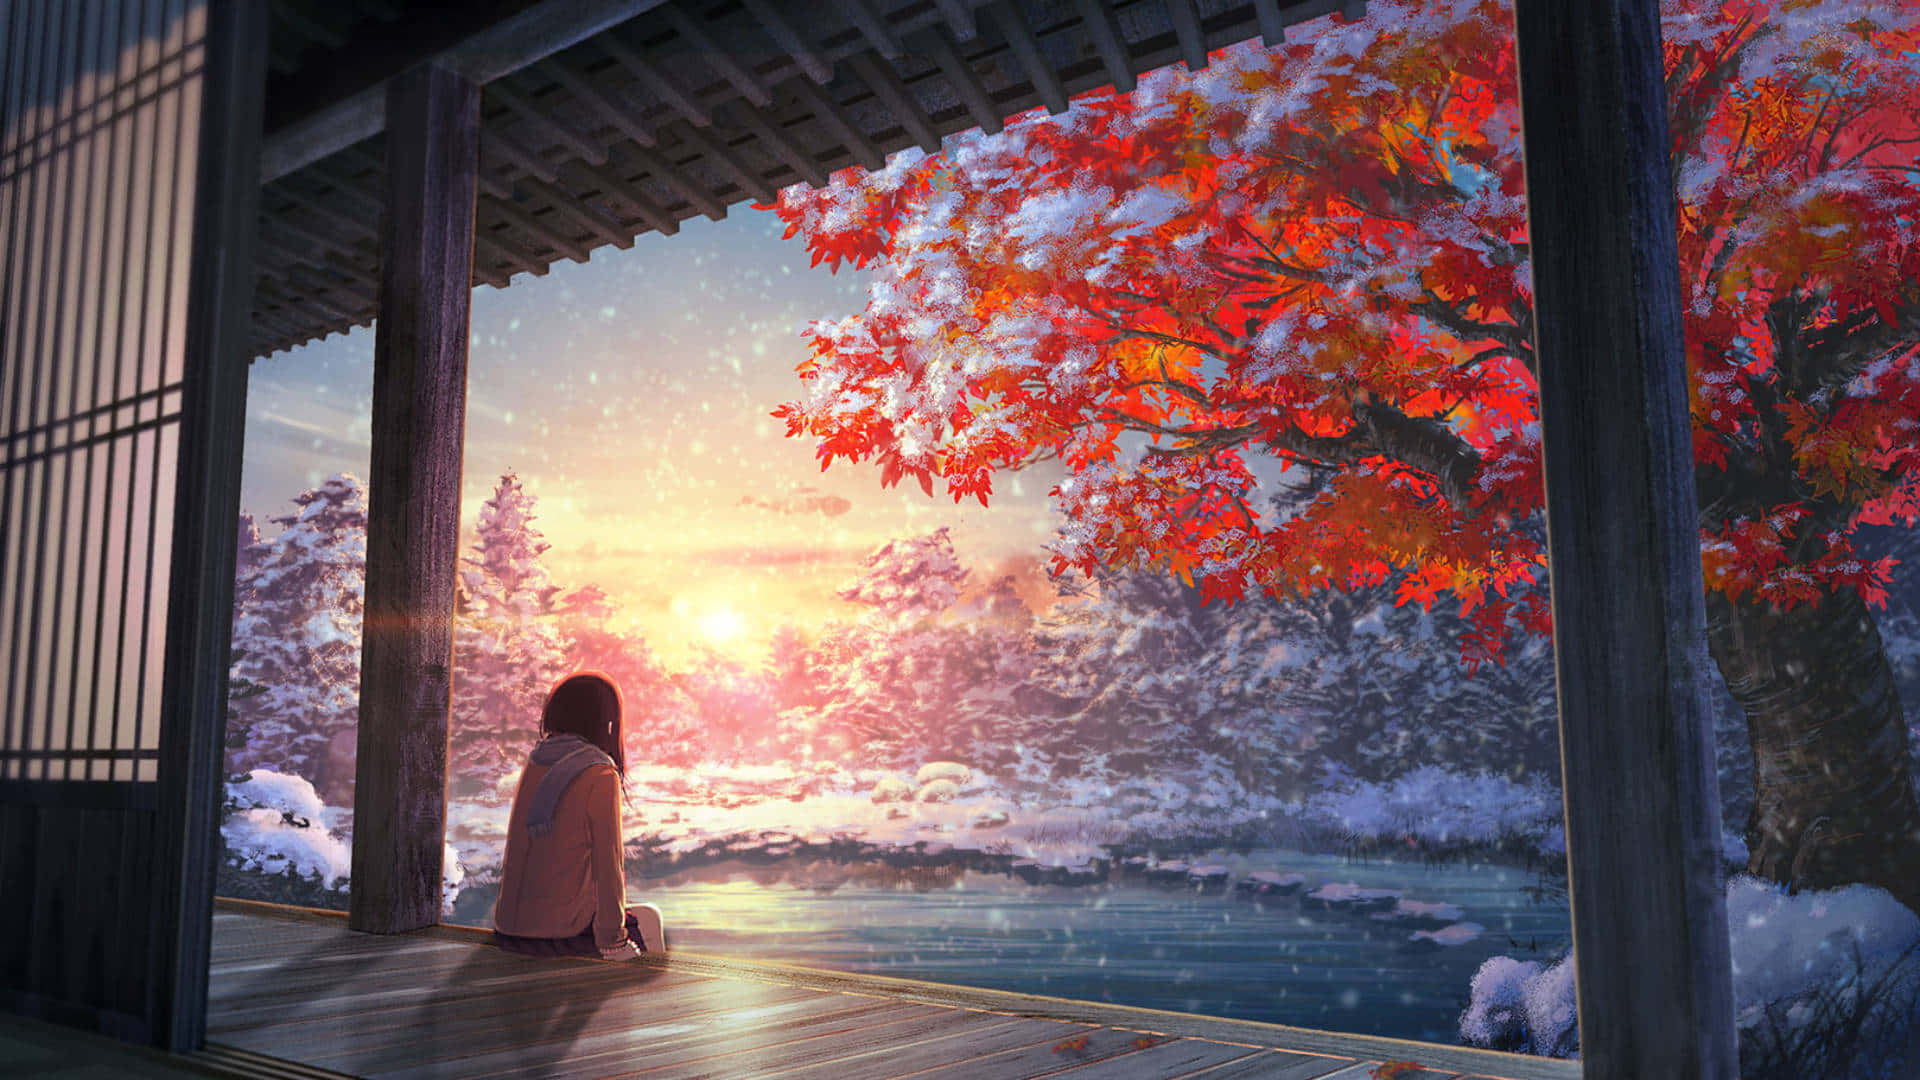 Unadonna È Seduta Su Una Veranda Guardando Fuori La Neve. Sfondo